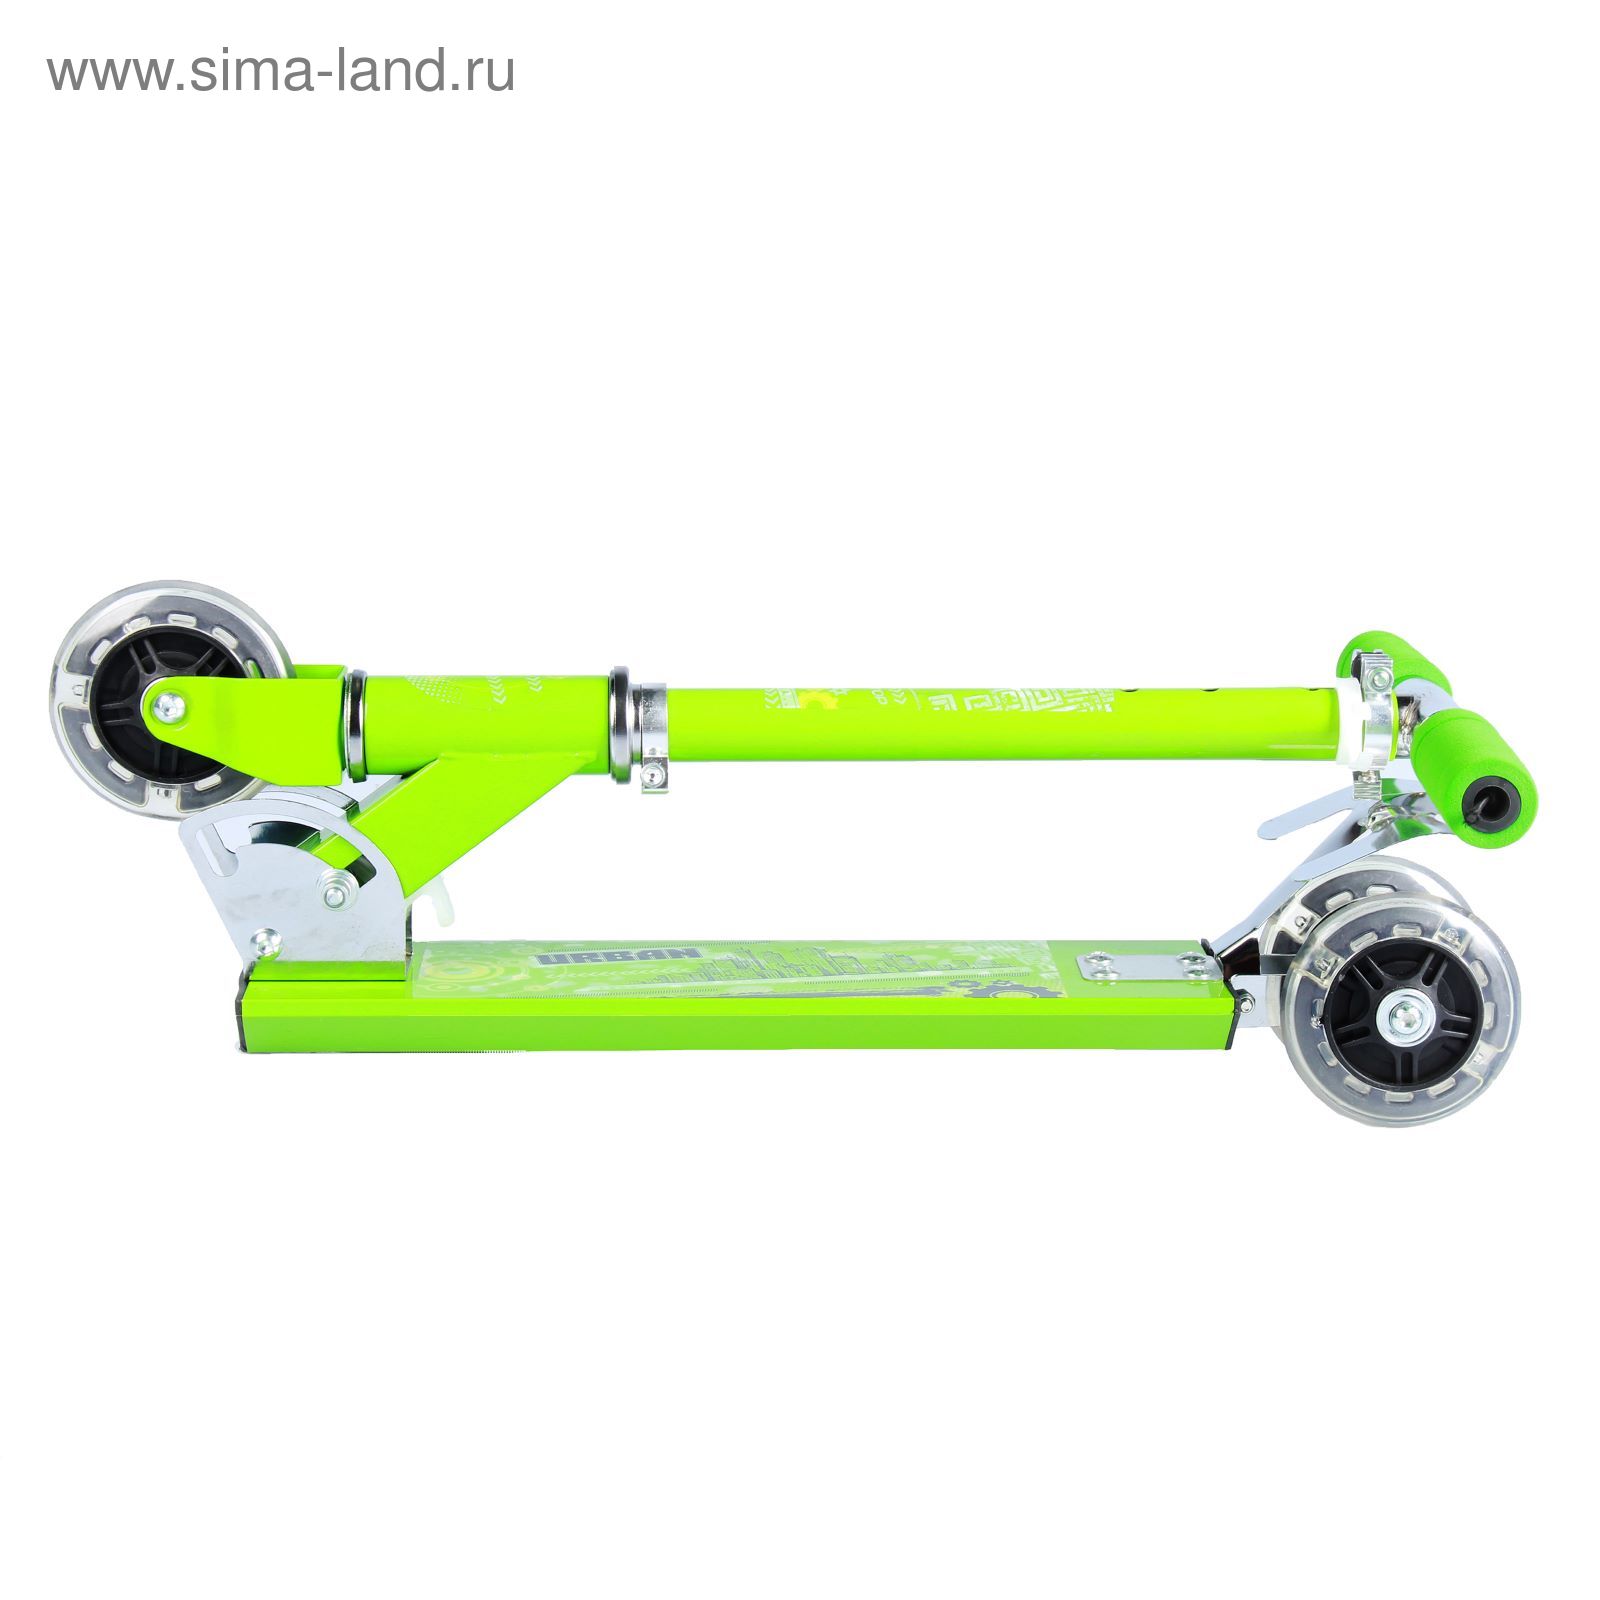 Самокат алюминиевый URBAN ОТ-Н4, три колеса PVC d= 100 мм, цвет зеленый